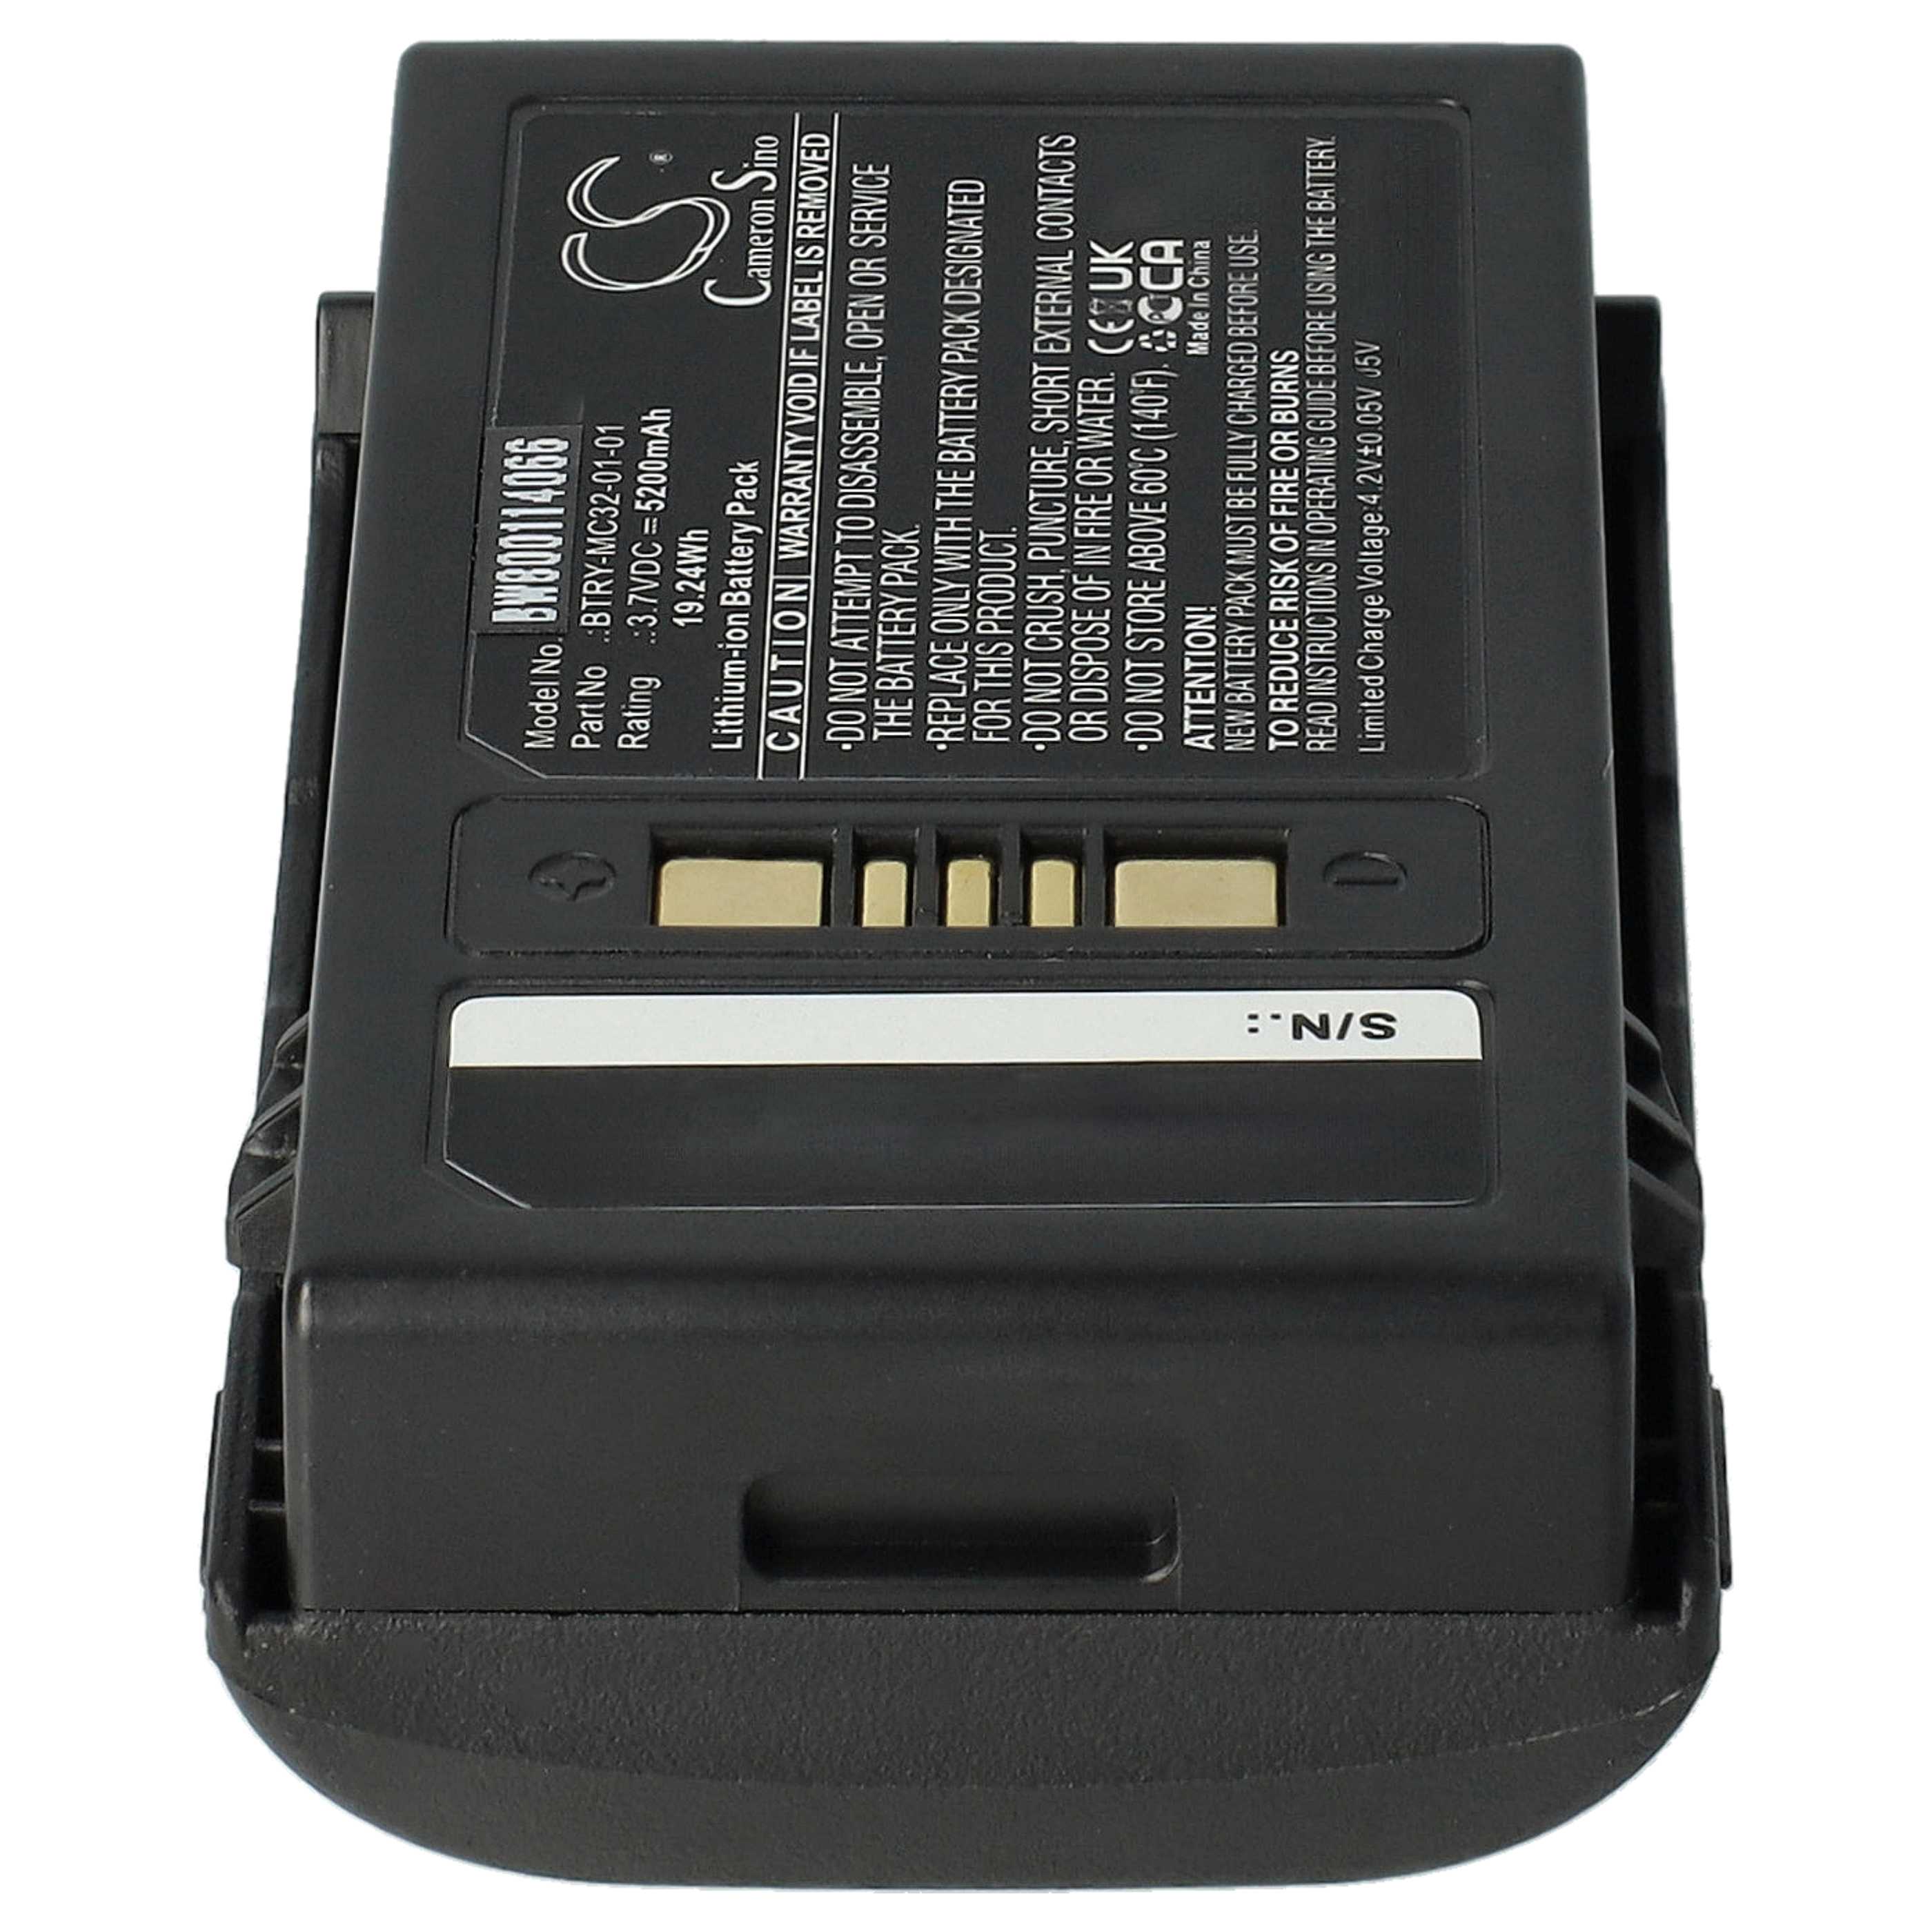 Batterie remplace Motorola BTRY-MC32-01-01 pour scanner de code-barre - 5200mAh 3,7V Li-ion